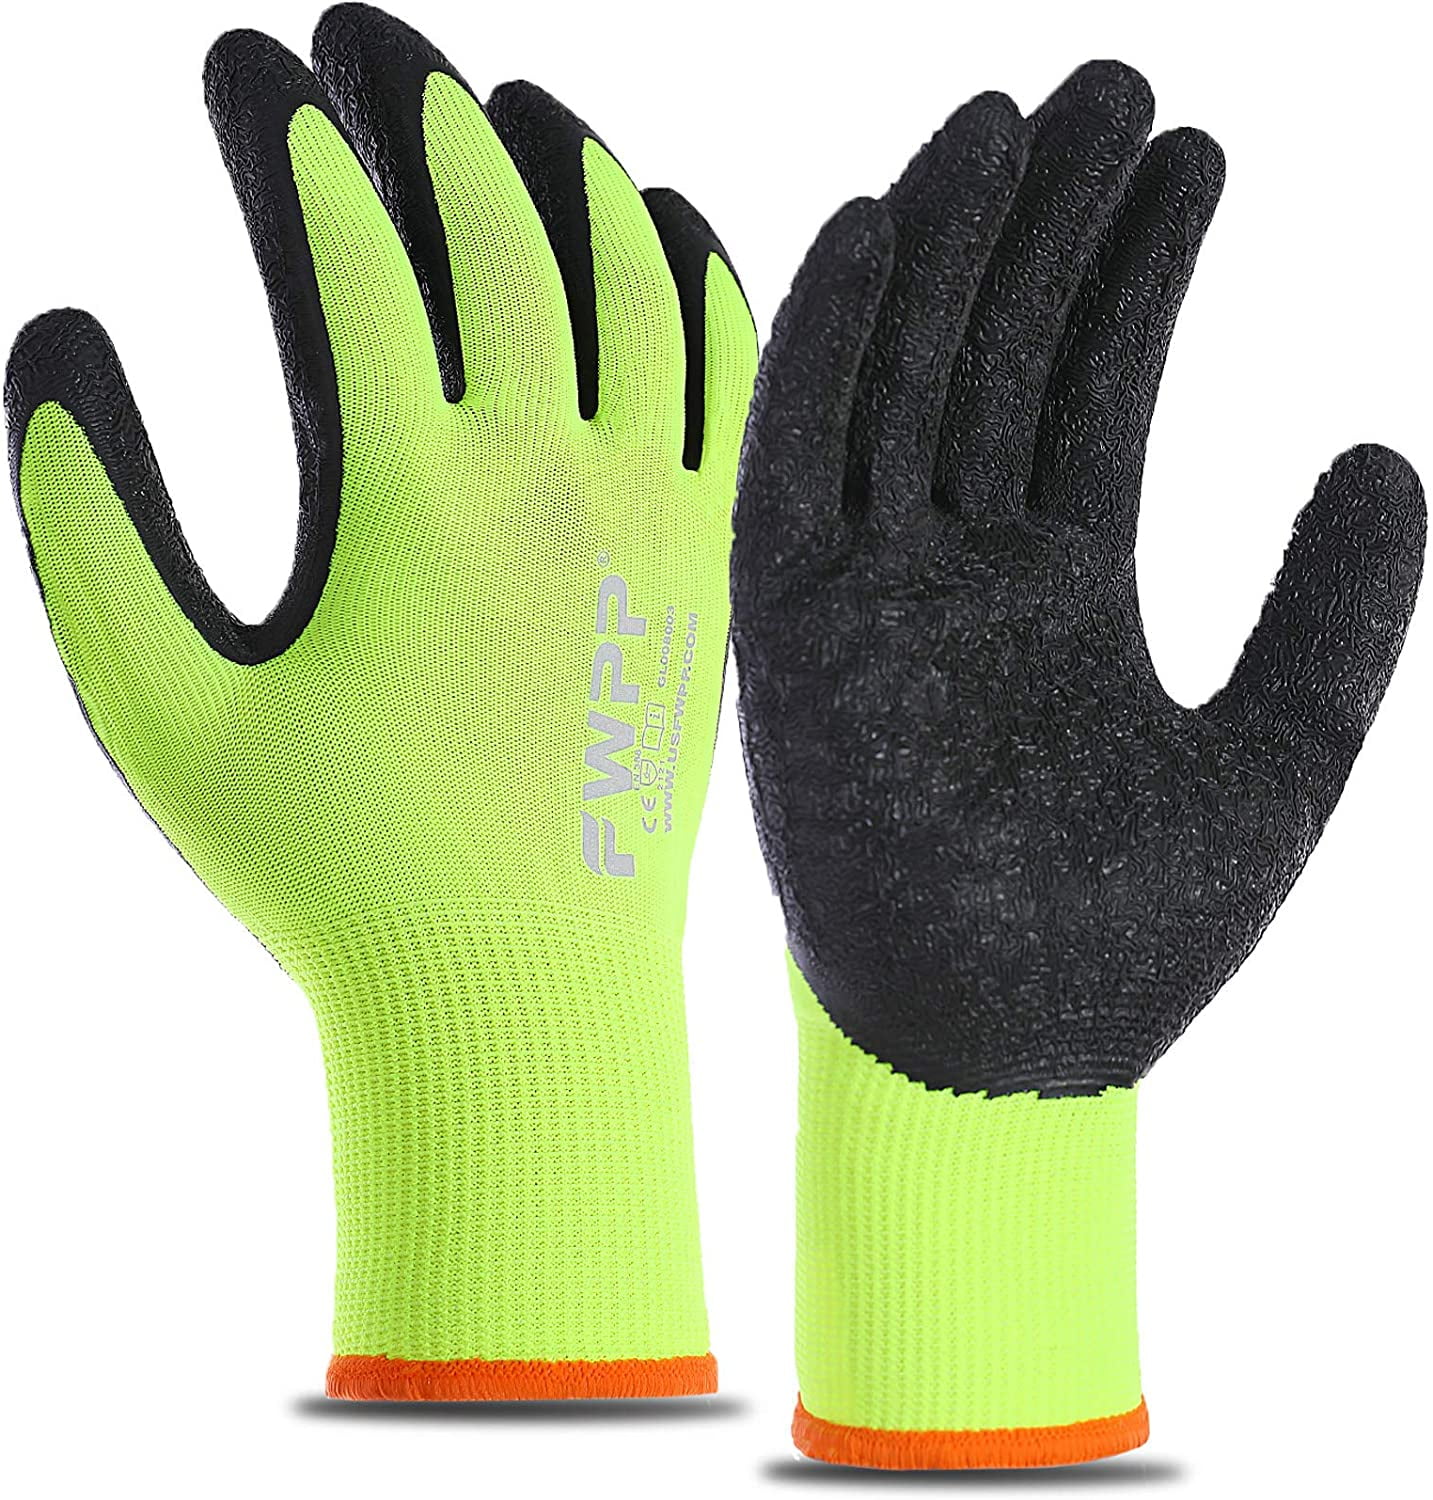 Pair Blue Work Safety Latex Rubber Grip Gloves Builders Gardening etc 